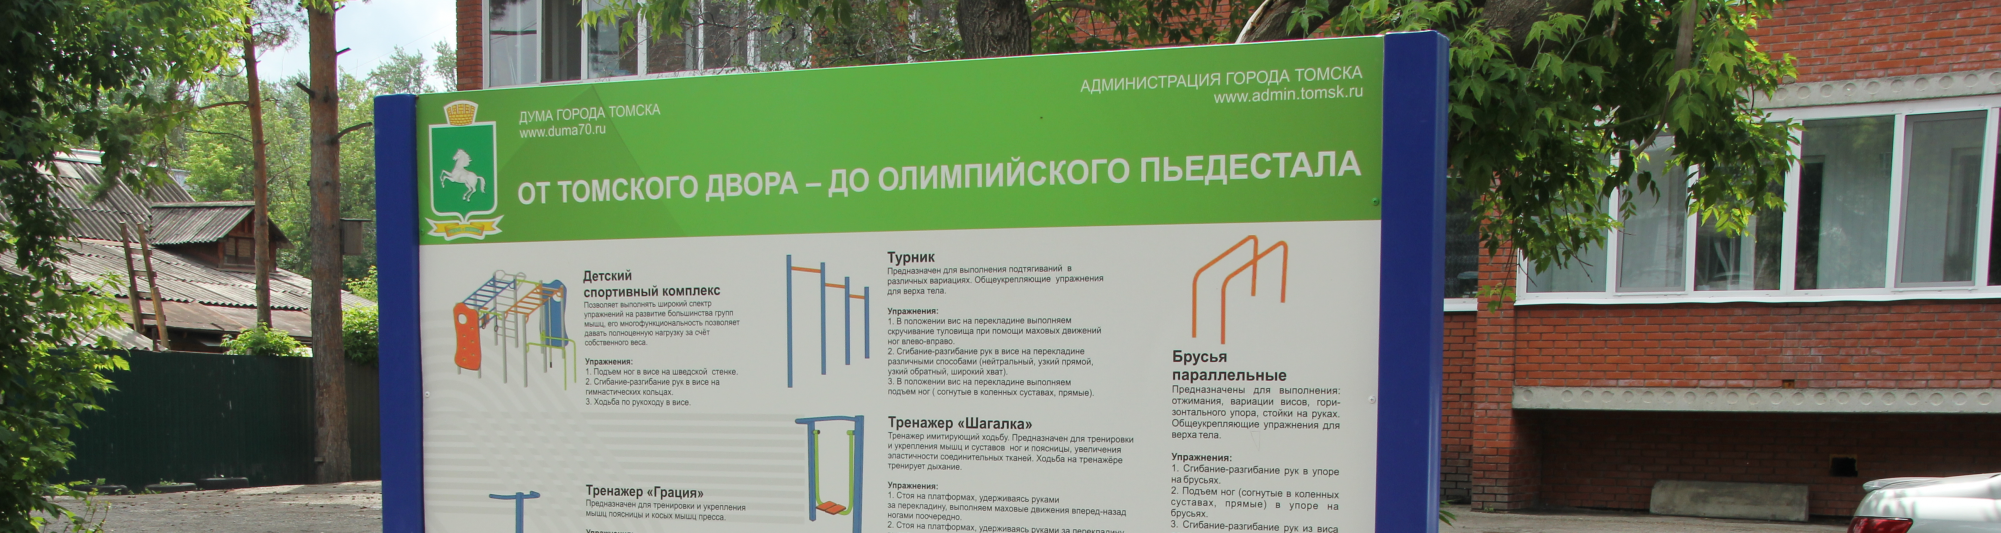 Проект городской Думы «От томского двора – до олимпийского пьедестала» будет продолжен в 2018 году